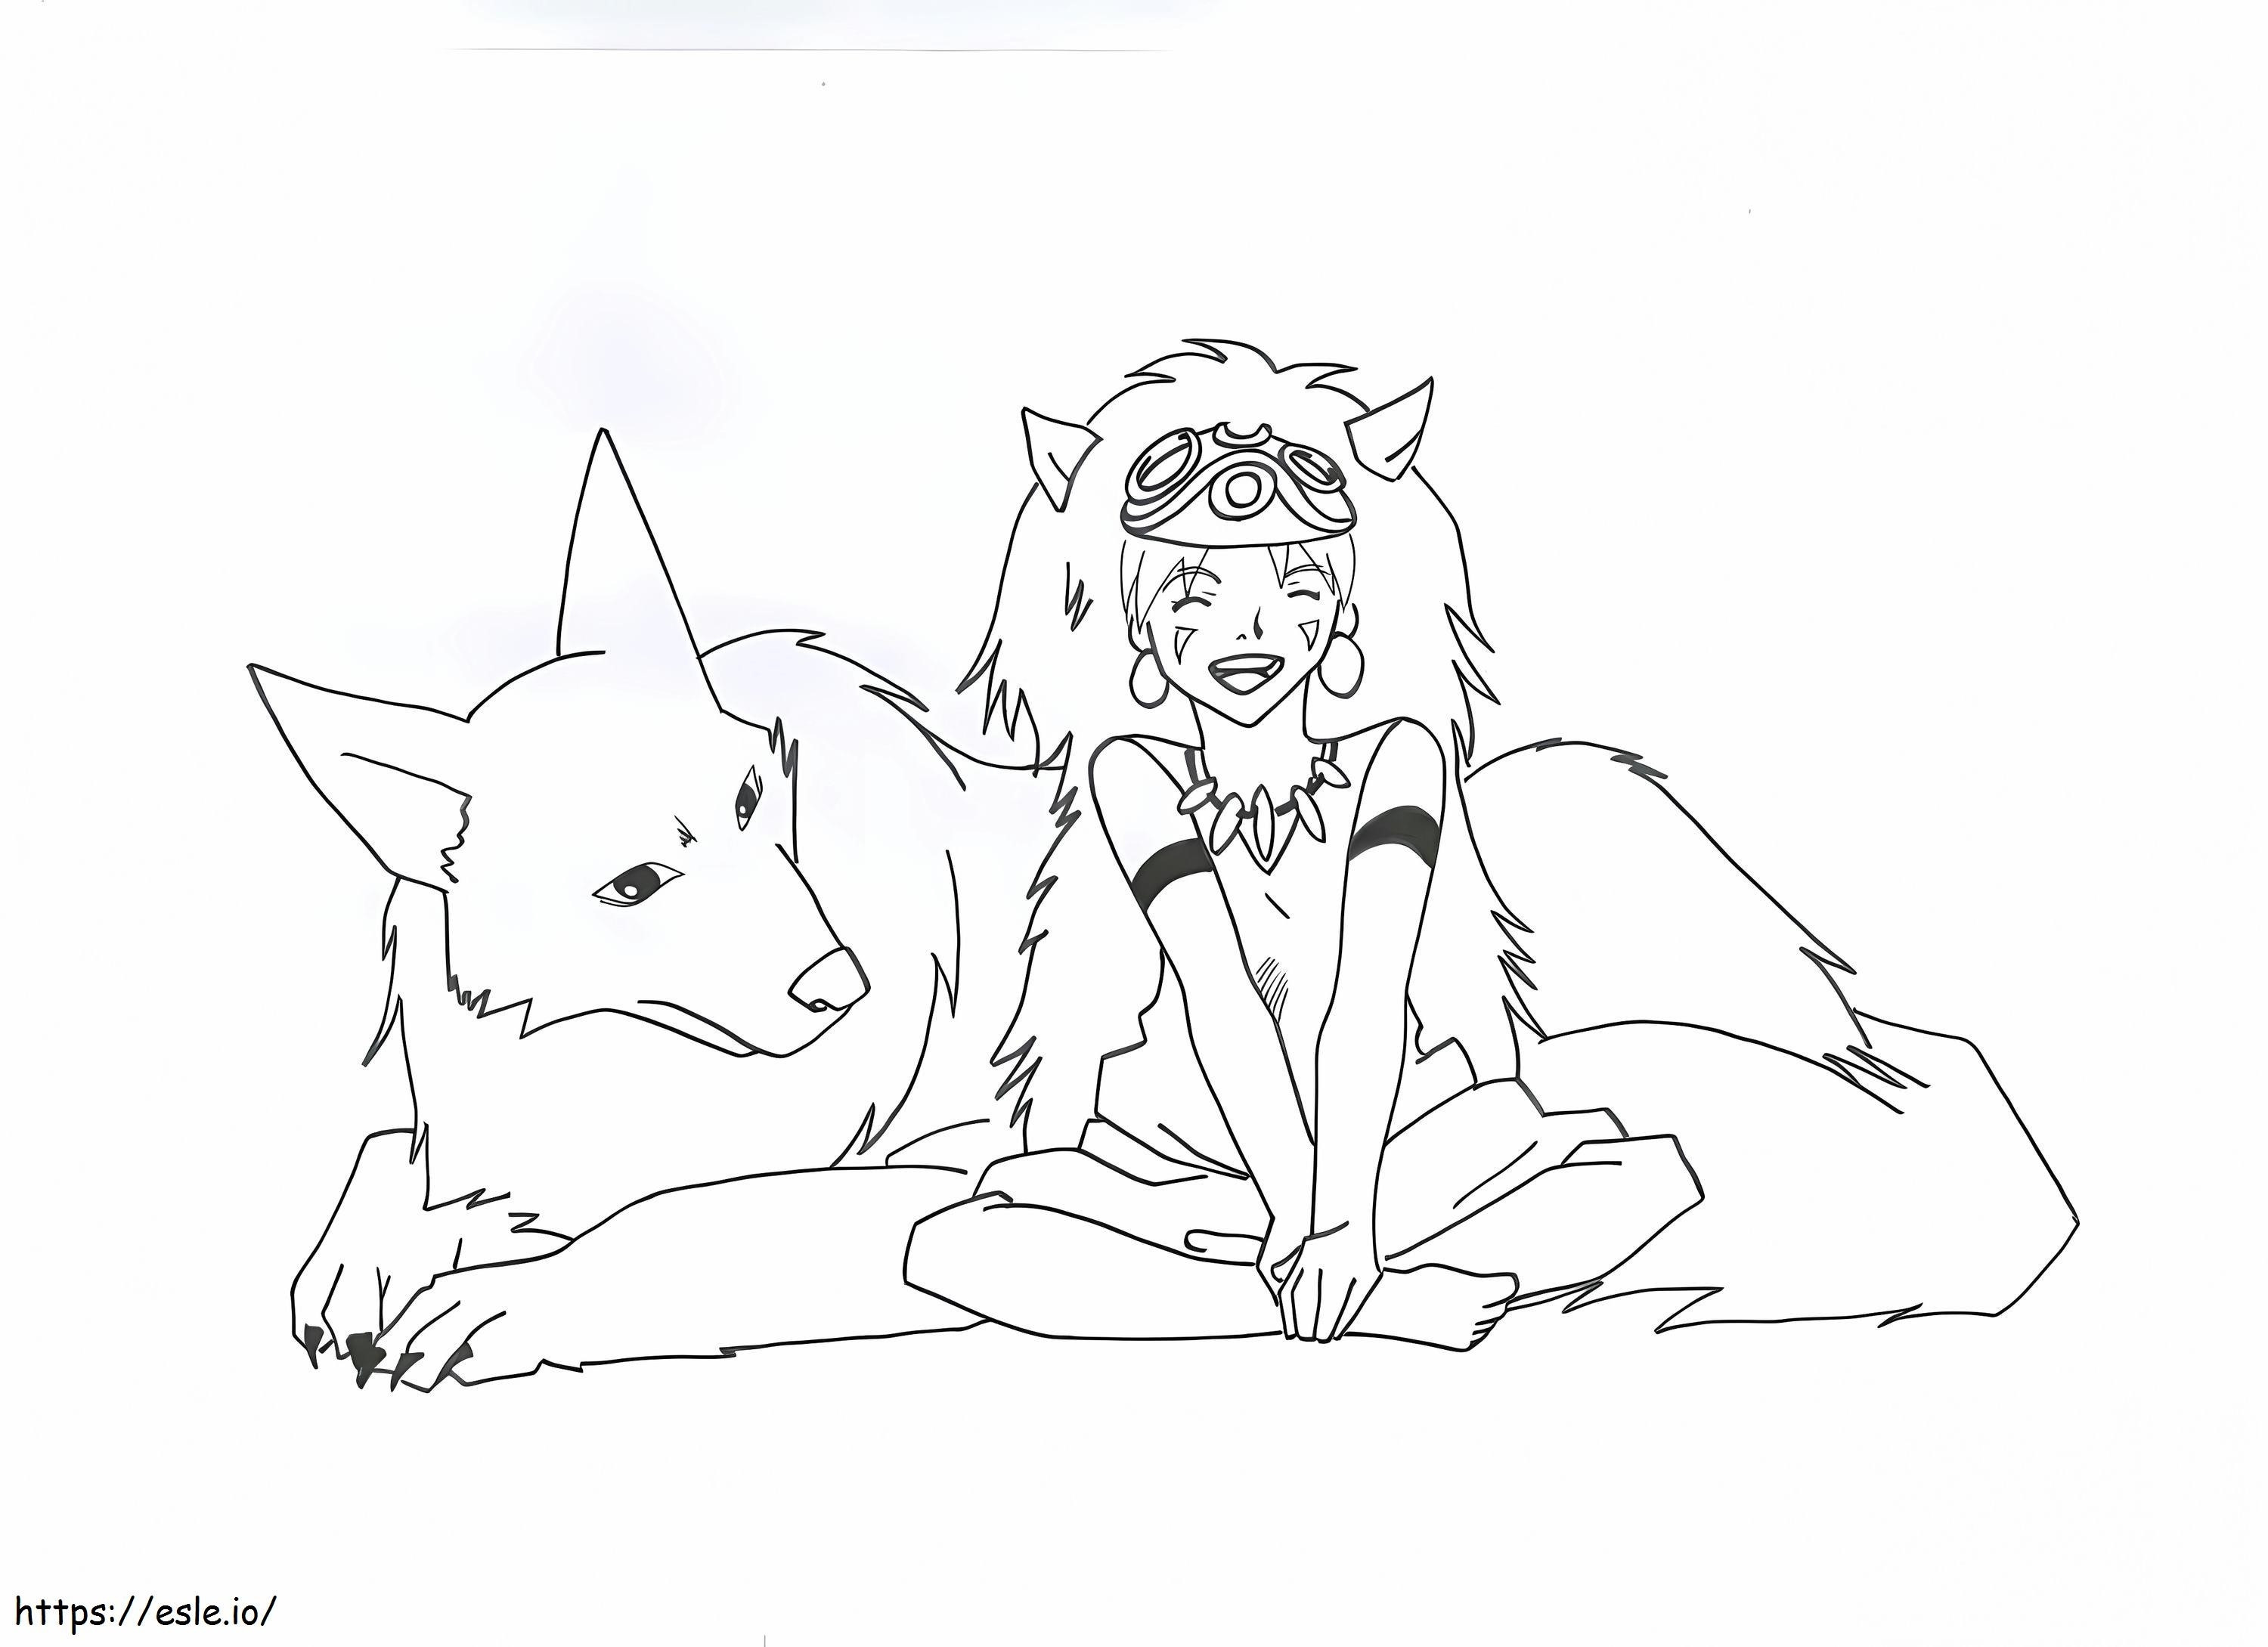 Happy Princess Mononoke coloring page